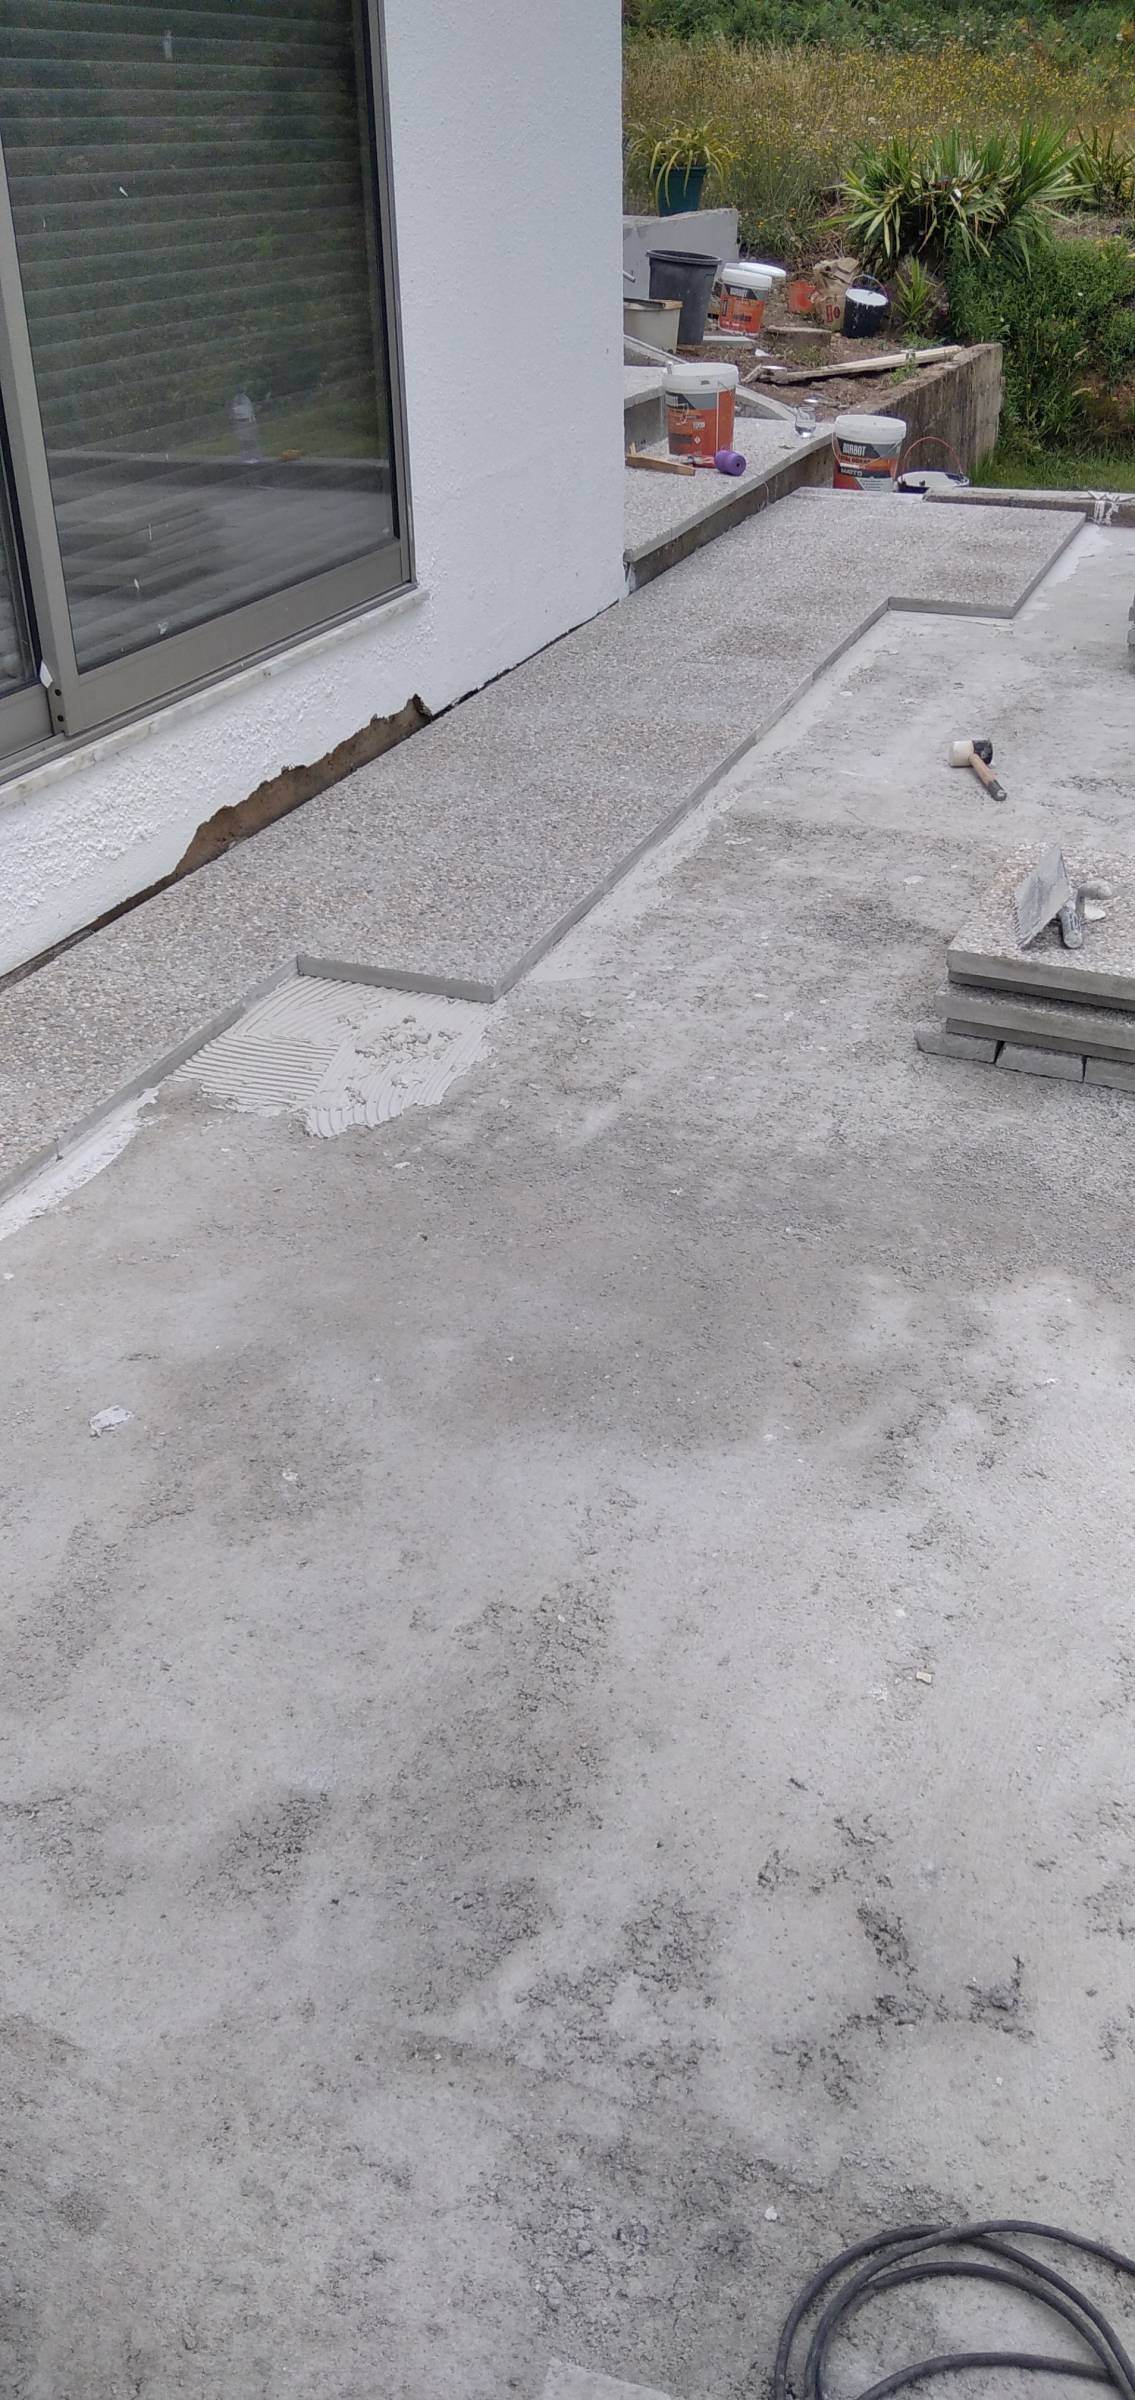 Elenco concreto - Porto - Remodelação de Casa de Banho